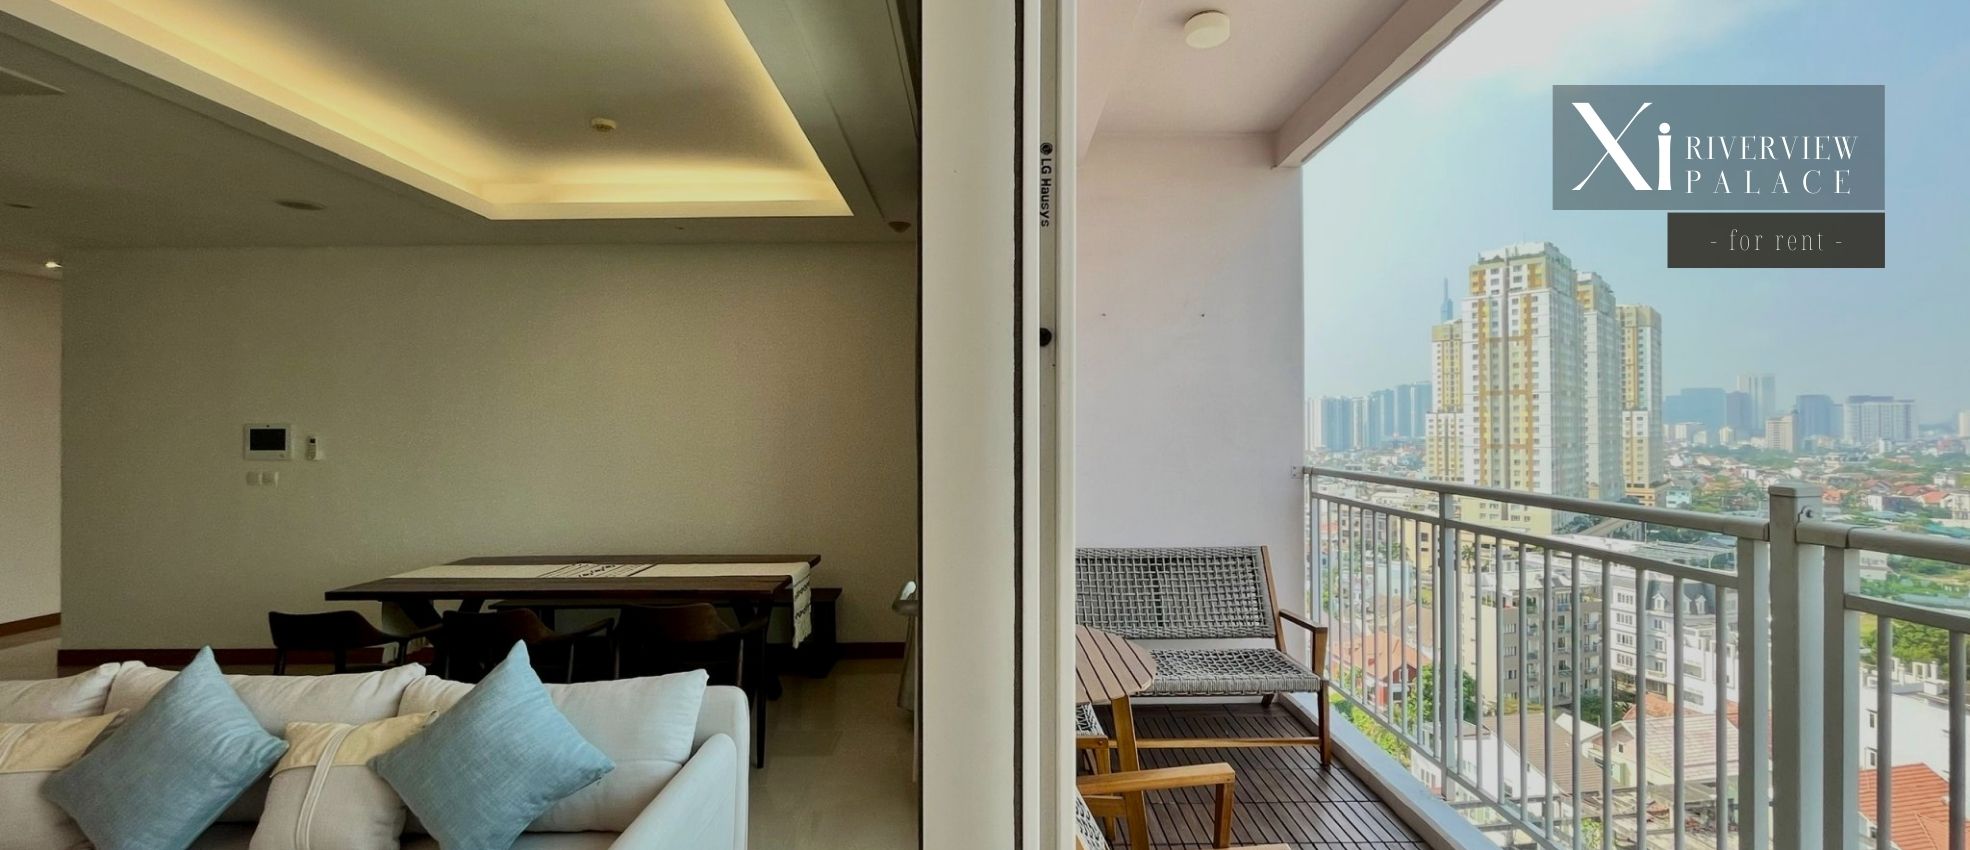 Cuộc sống sang trọng ngập tràn ánh nắng: Căn hộ 3 phòng ngủ view sông tại Xi Riverview Palace